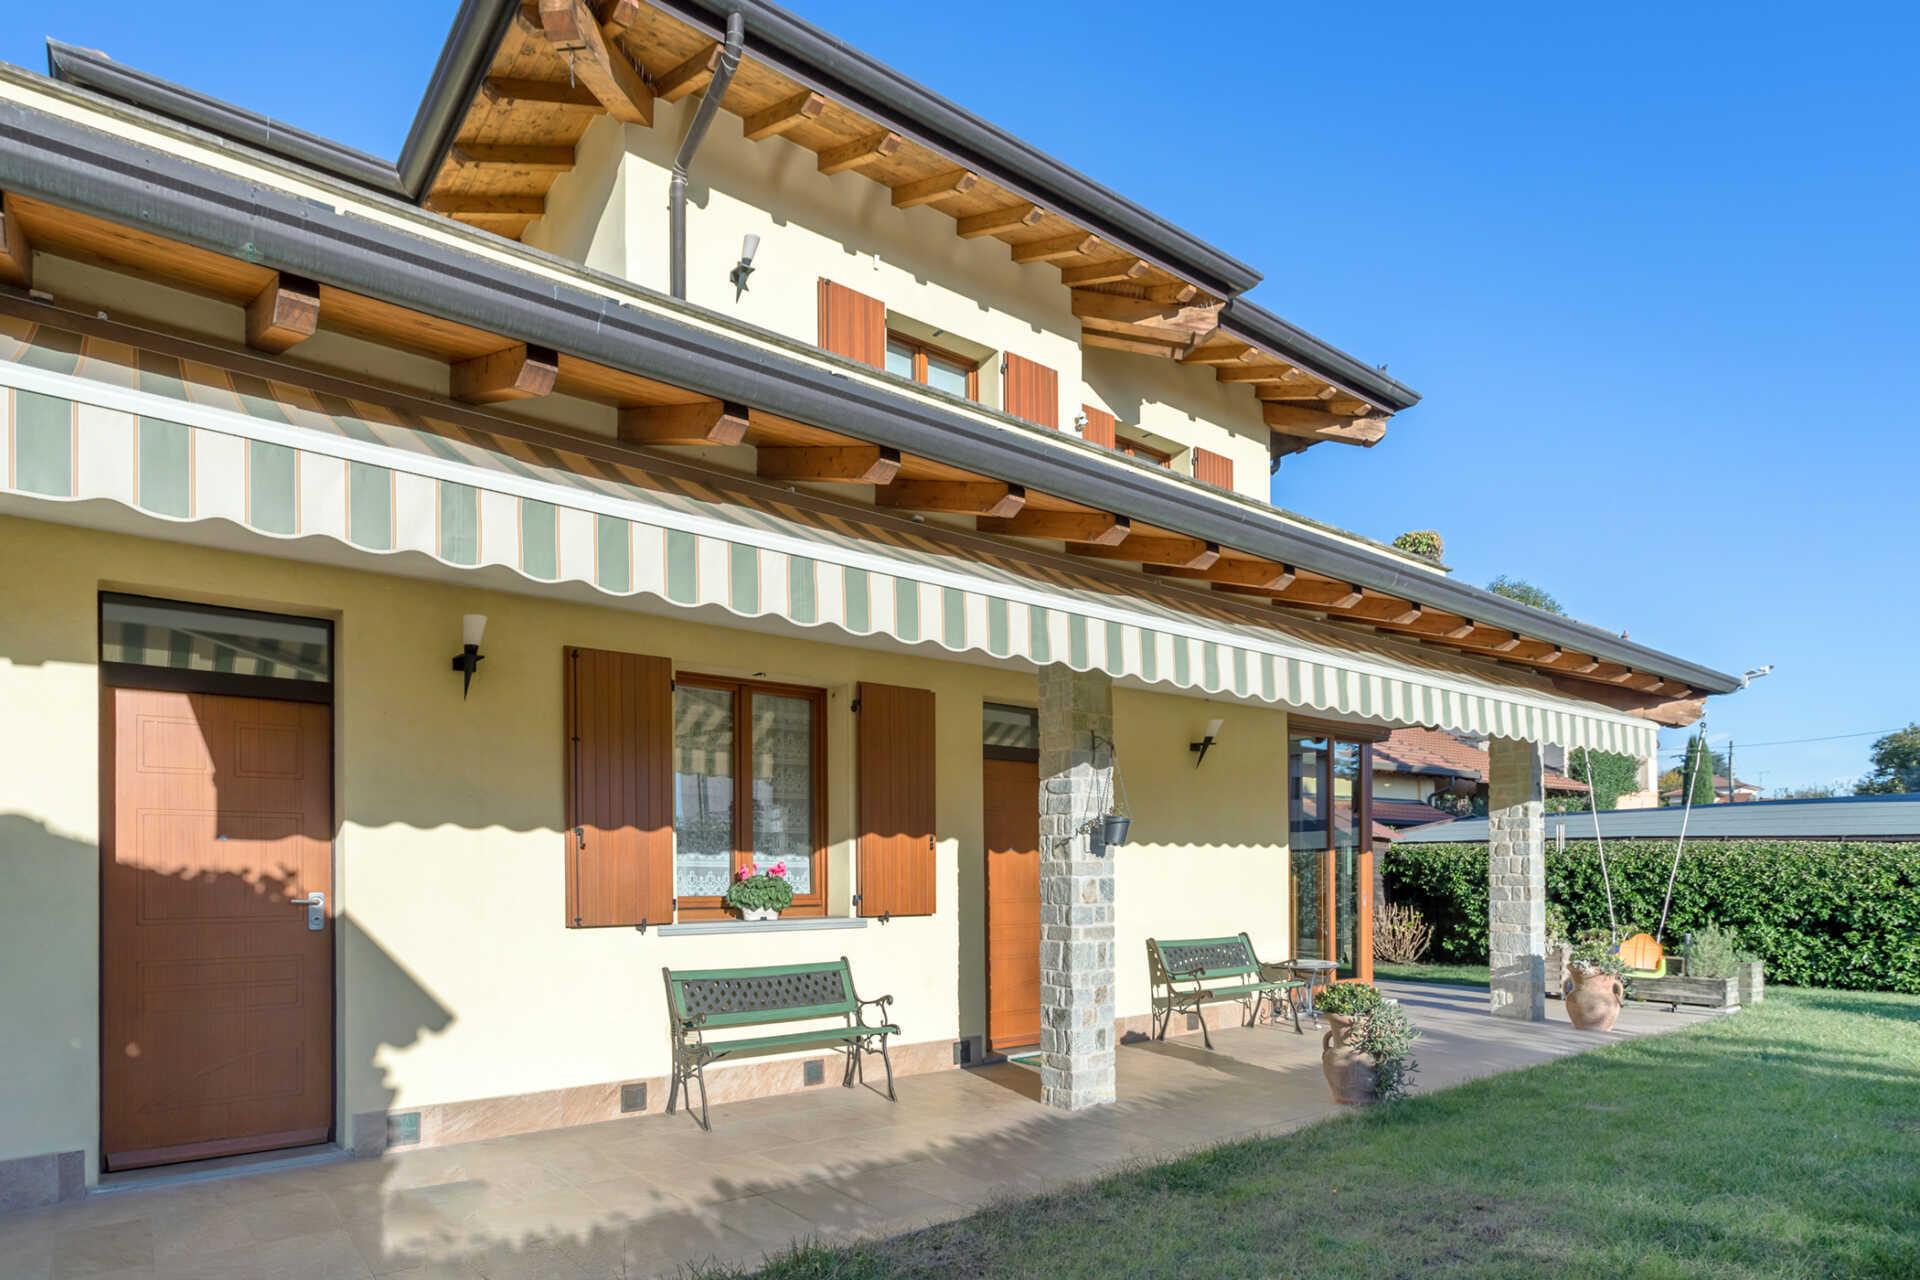 A vendre villa in zone tranquille Merate Lombardia